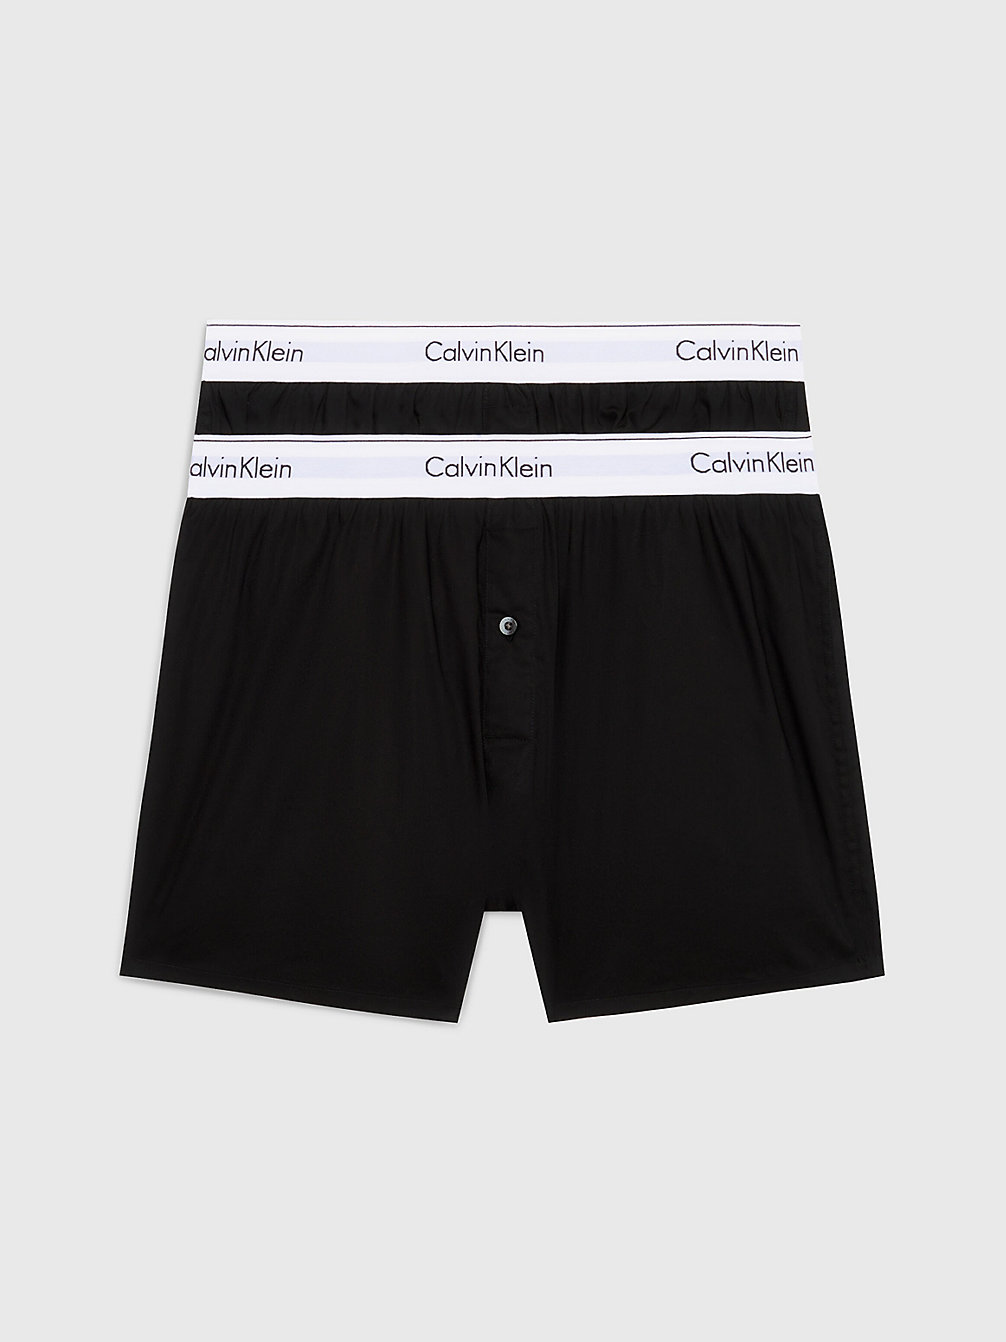 BLACK/BLACK 2-Pack Slim Fit Boxershorts - Modern Cotton undefined heren Calvin Klein